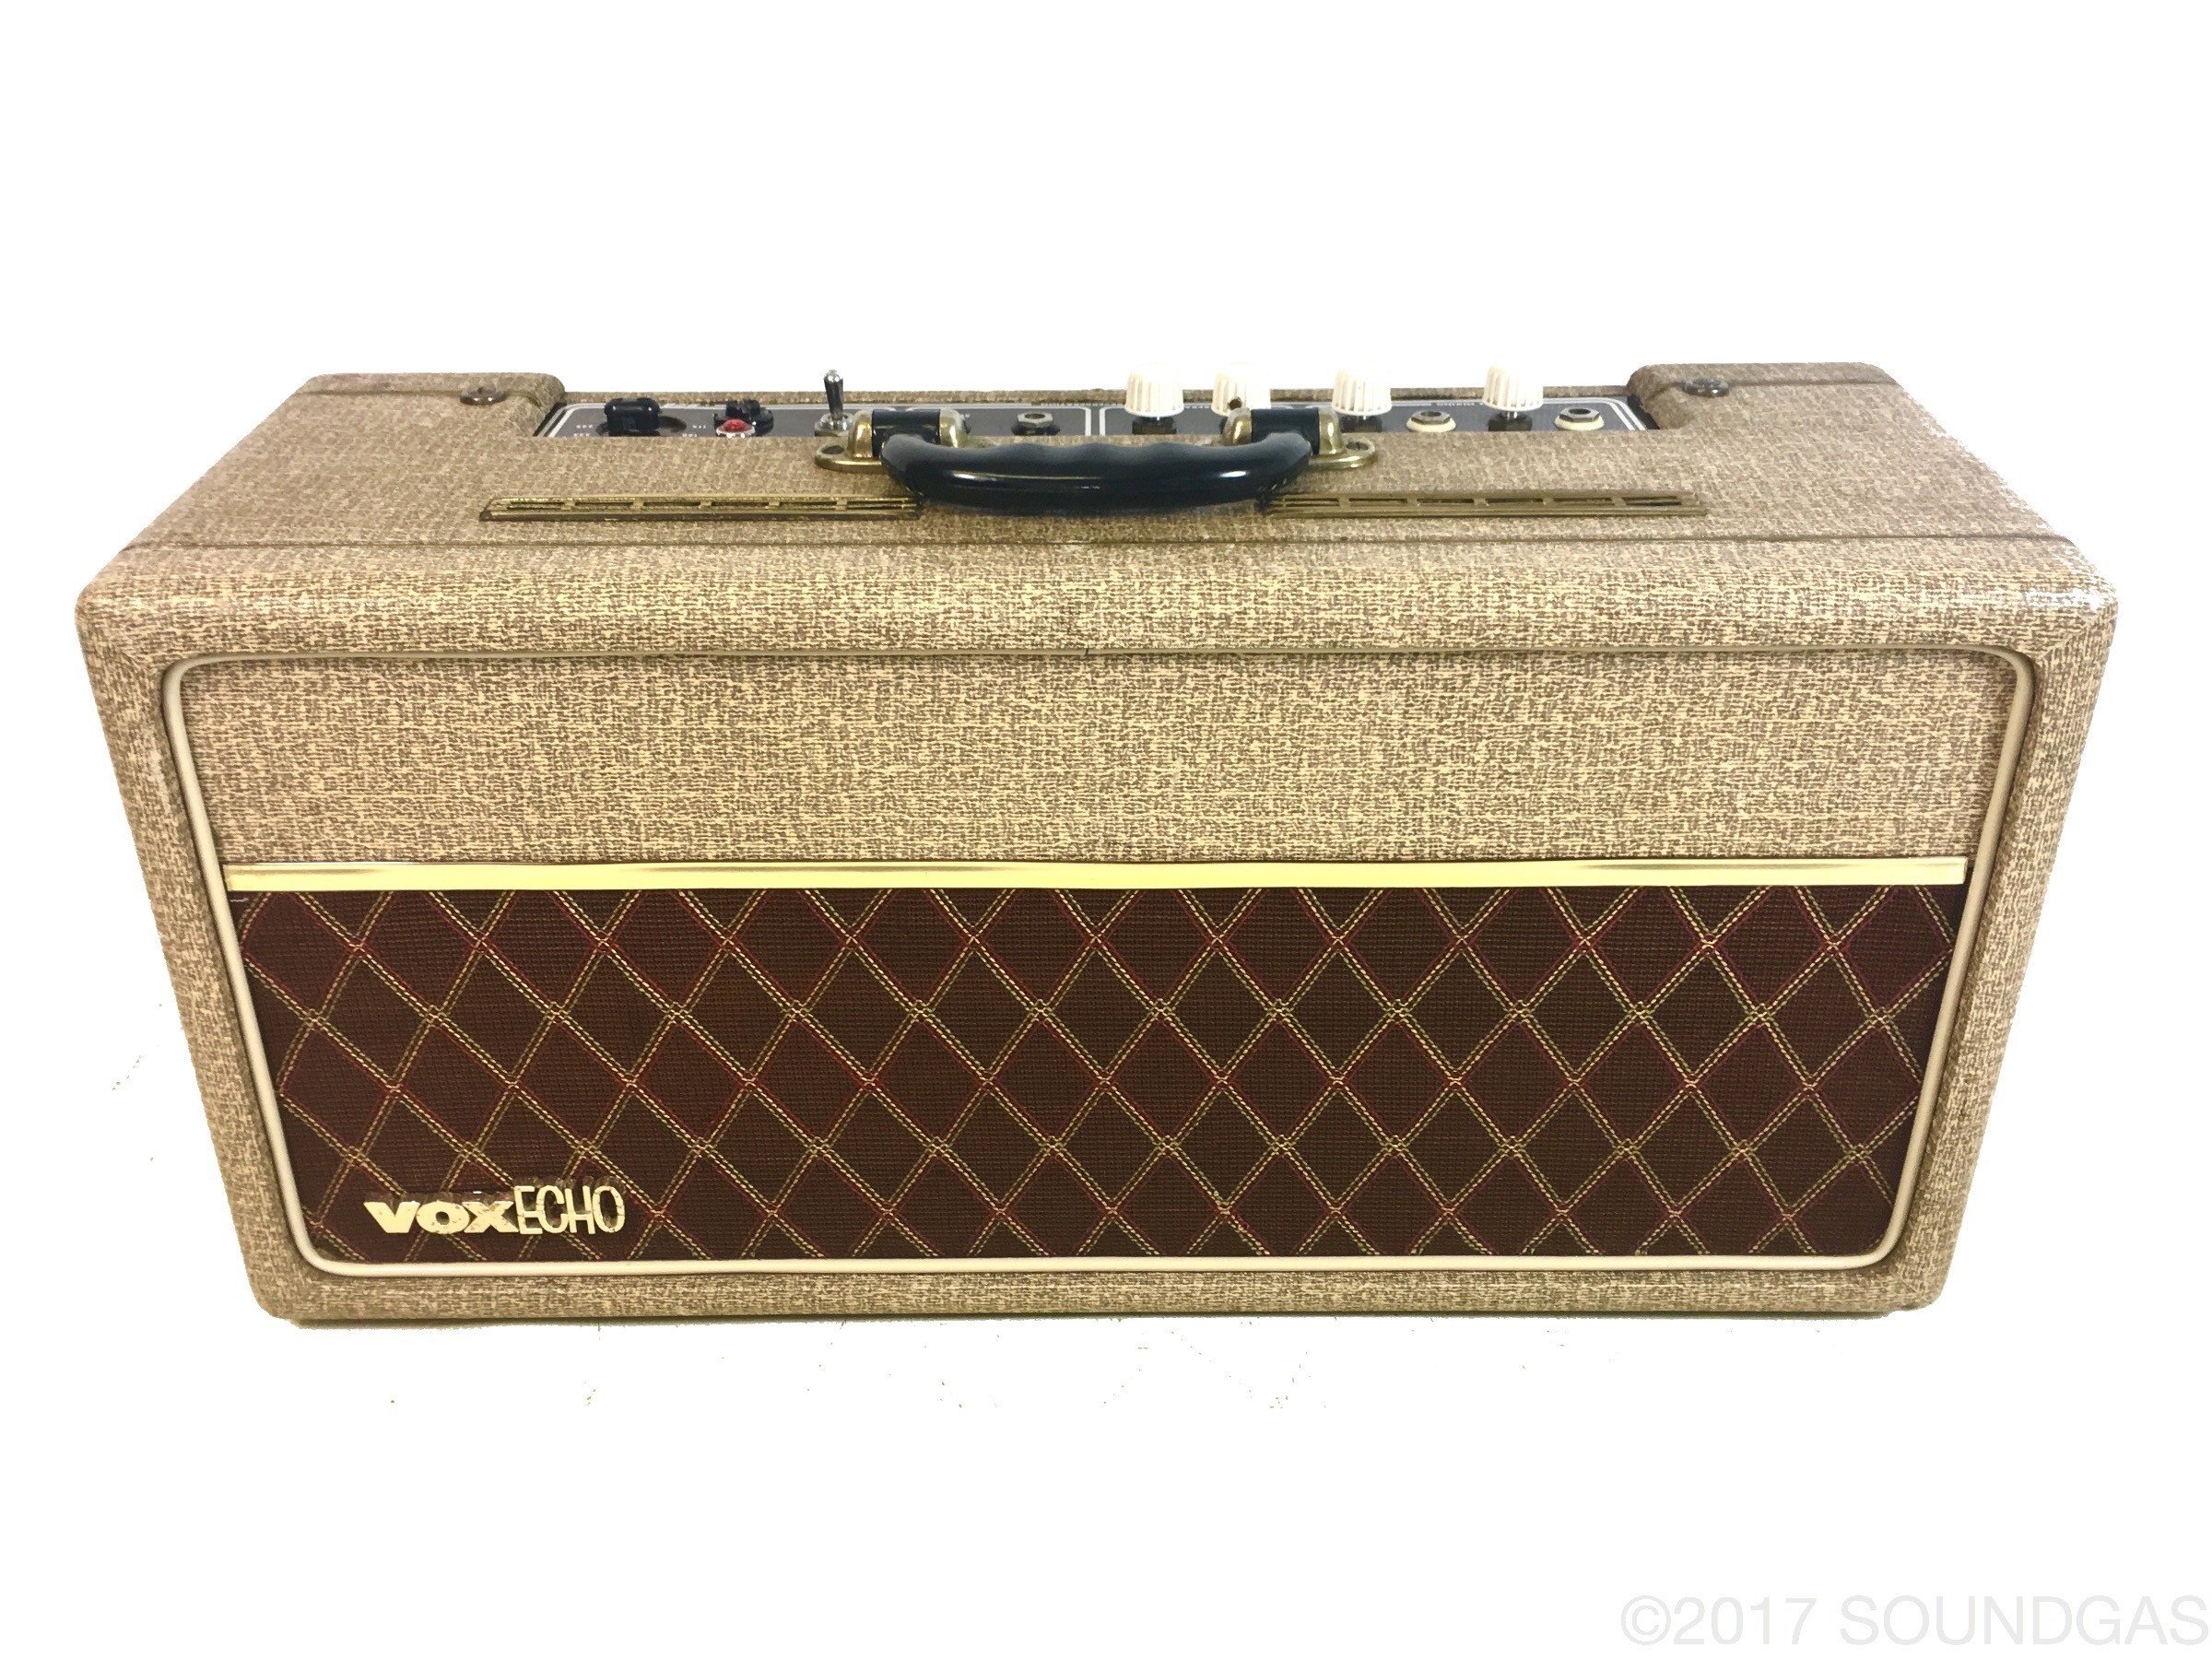 1963 Vox Echo Reverberation Unit (JMI)